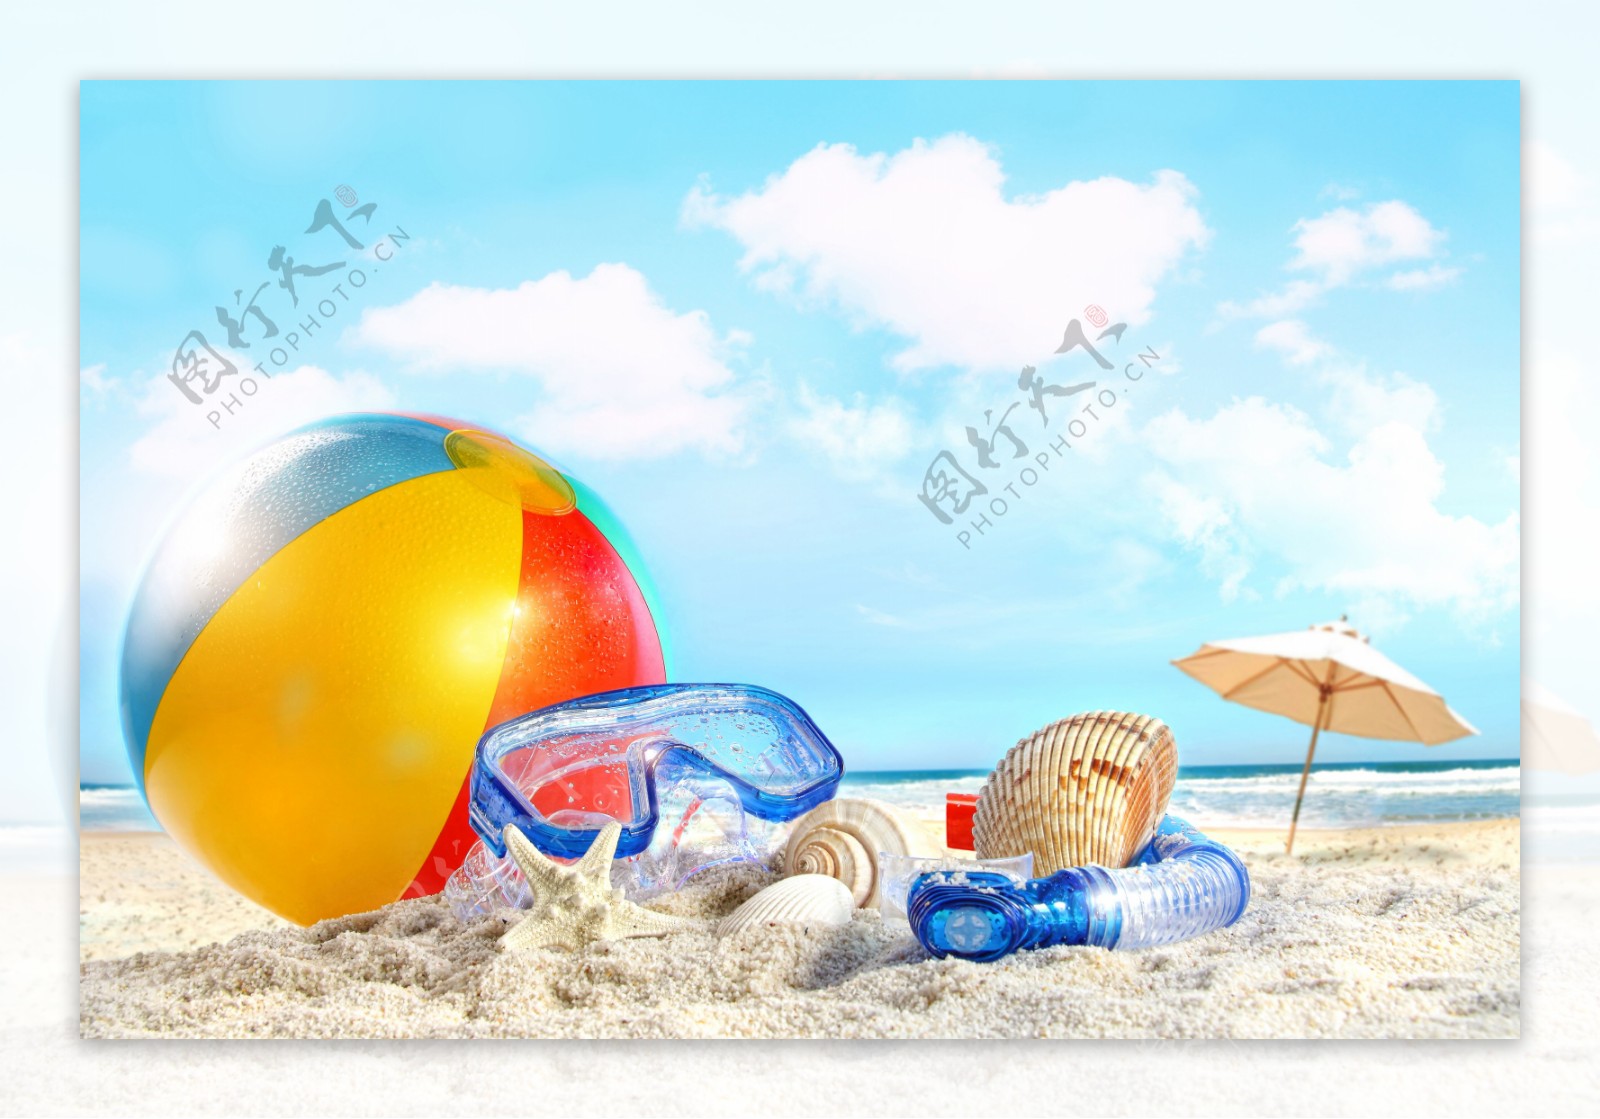 沙滩上的球与贝壳